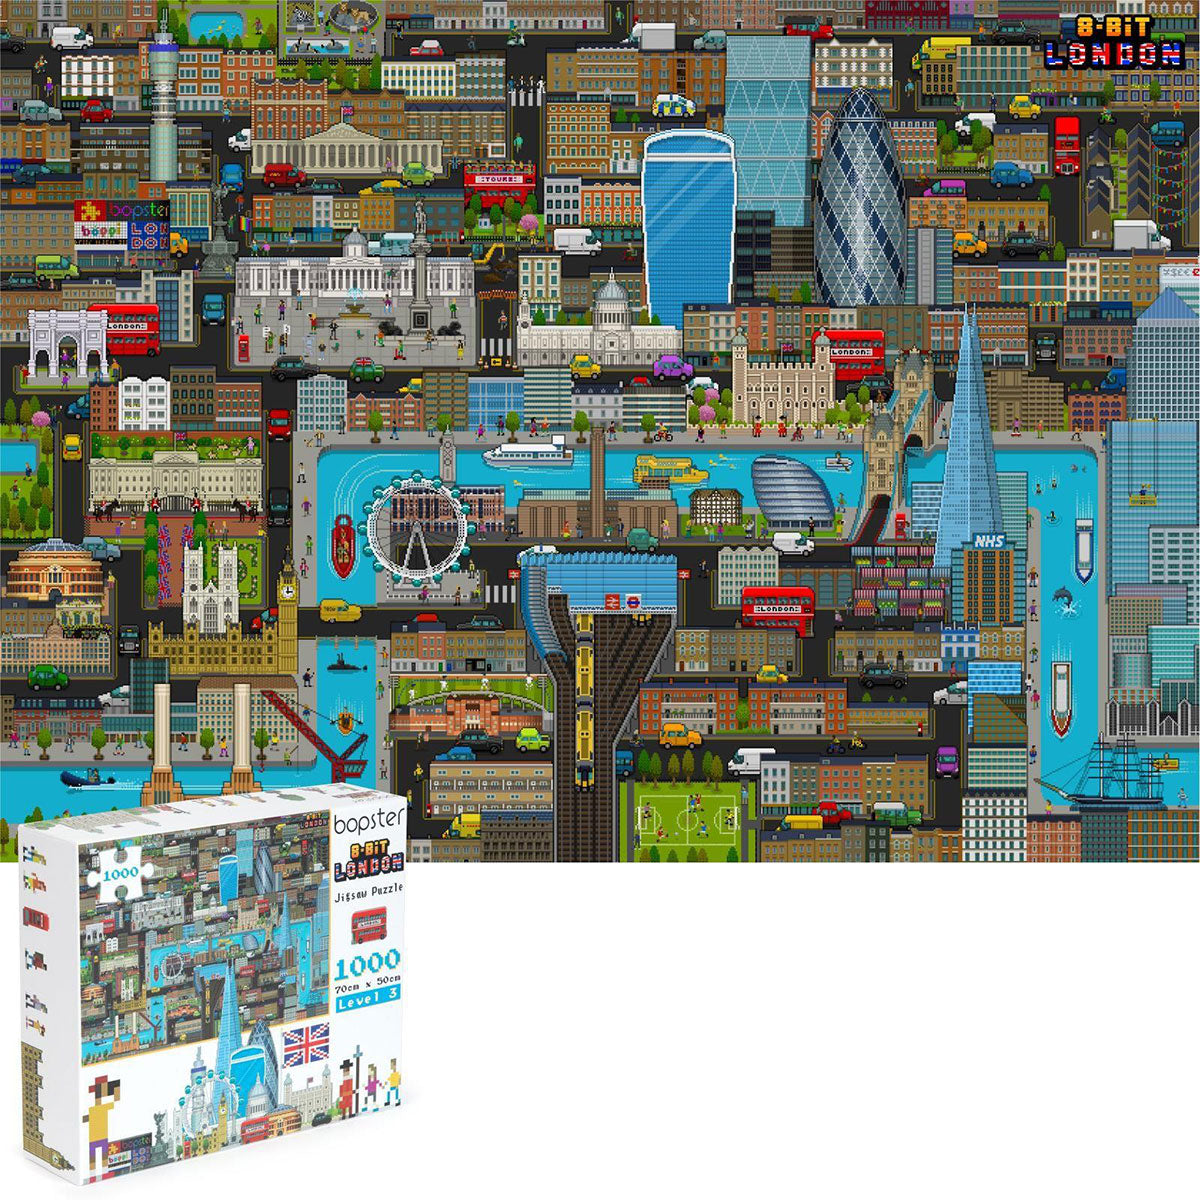 Bopster 8-Bit London Jigsaw Puzzle - 1000 Pieces 1